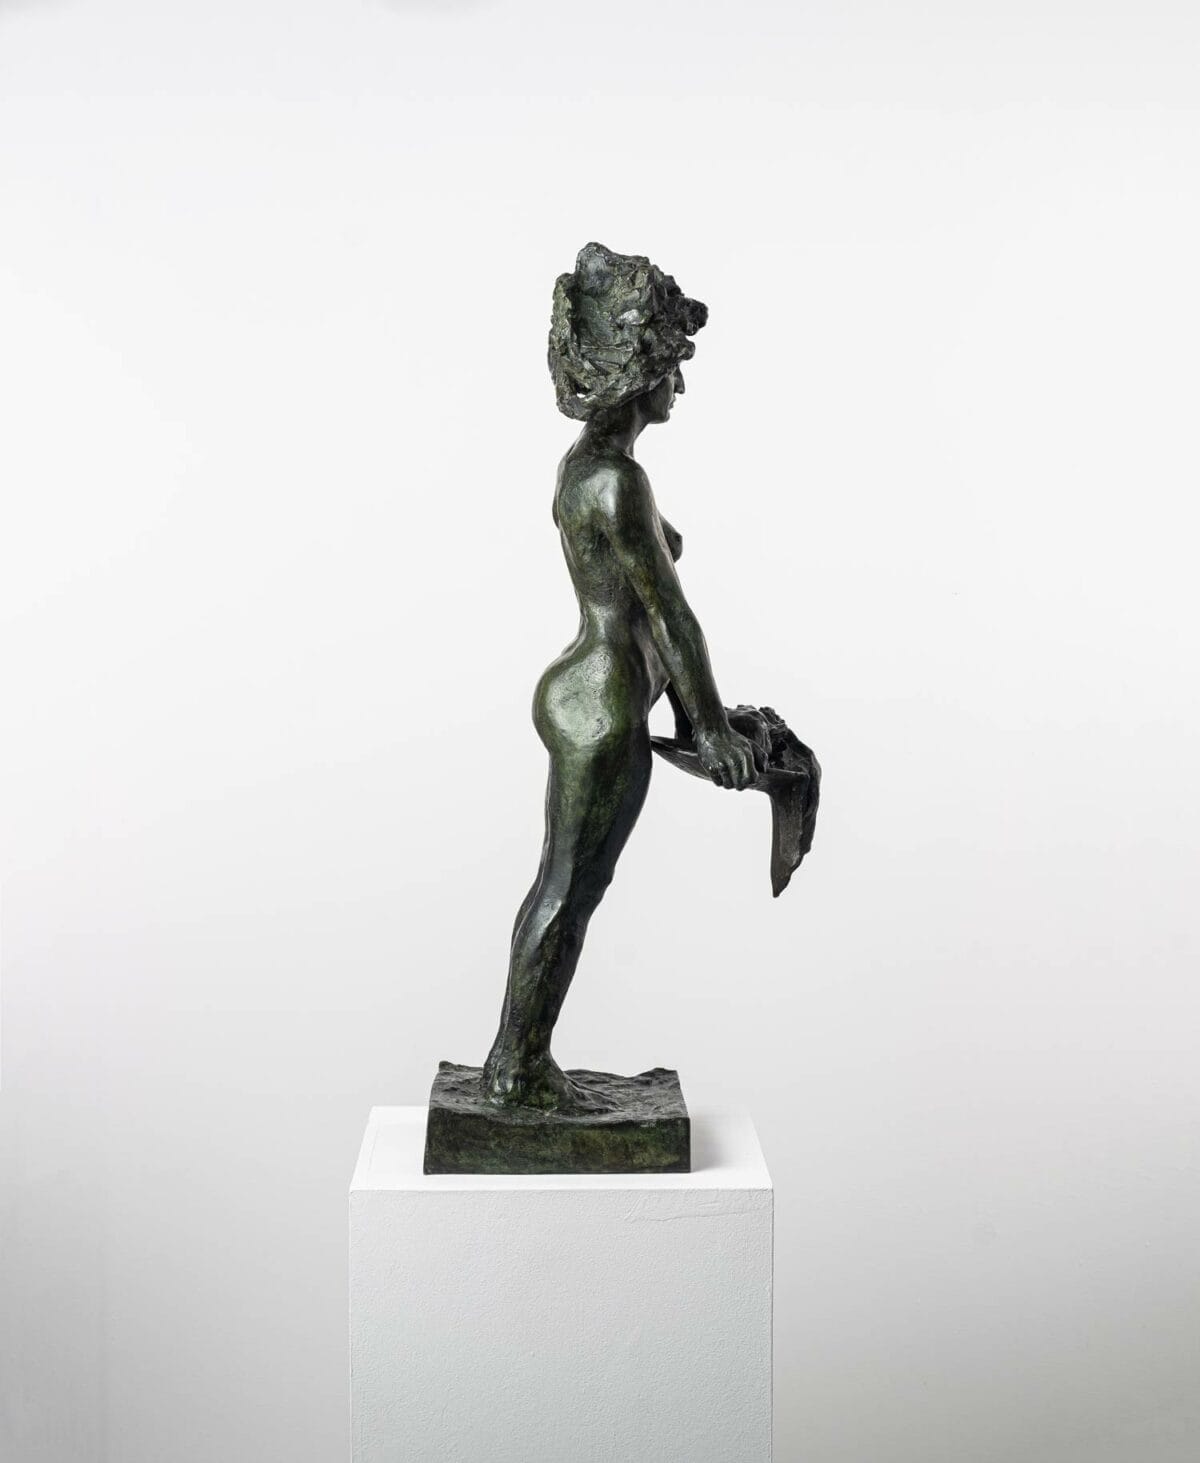 Salomé en bronze par Guy Le Perse, un sculpteur français dont l'inspiration provient des grands mythes et de la Bible. Il s'inspire également de Rodin et Michel-Ange.